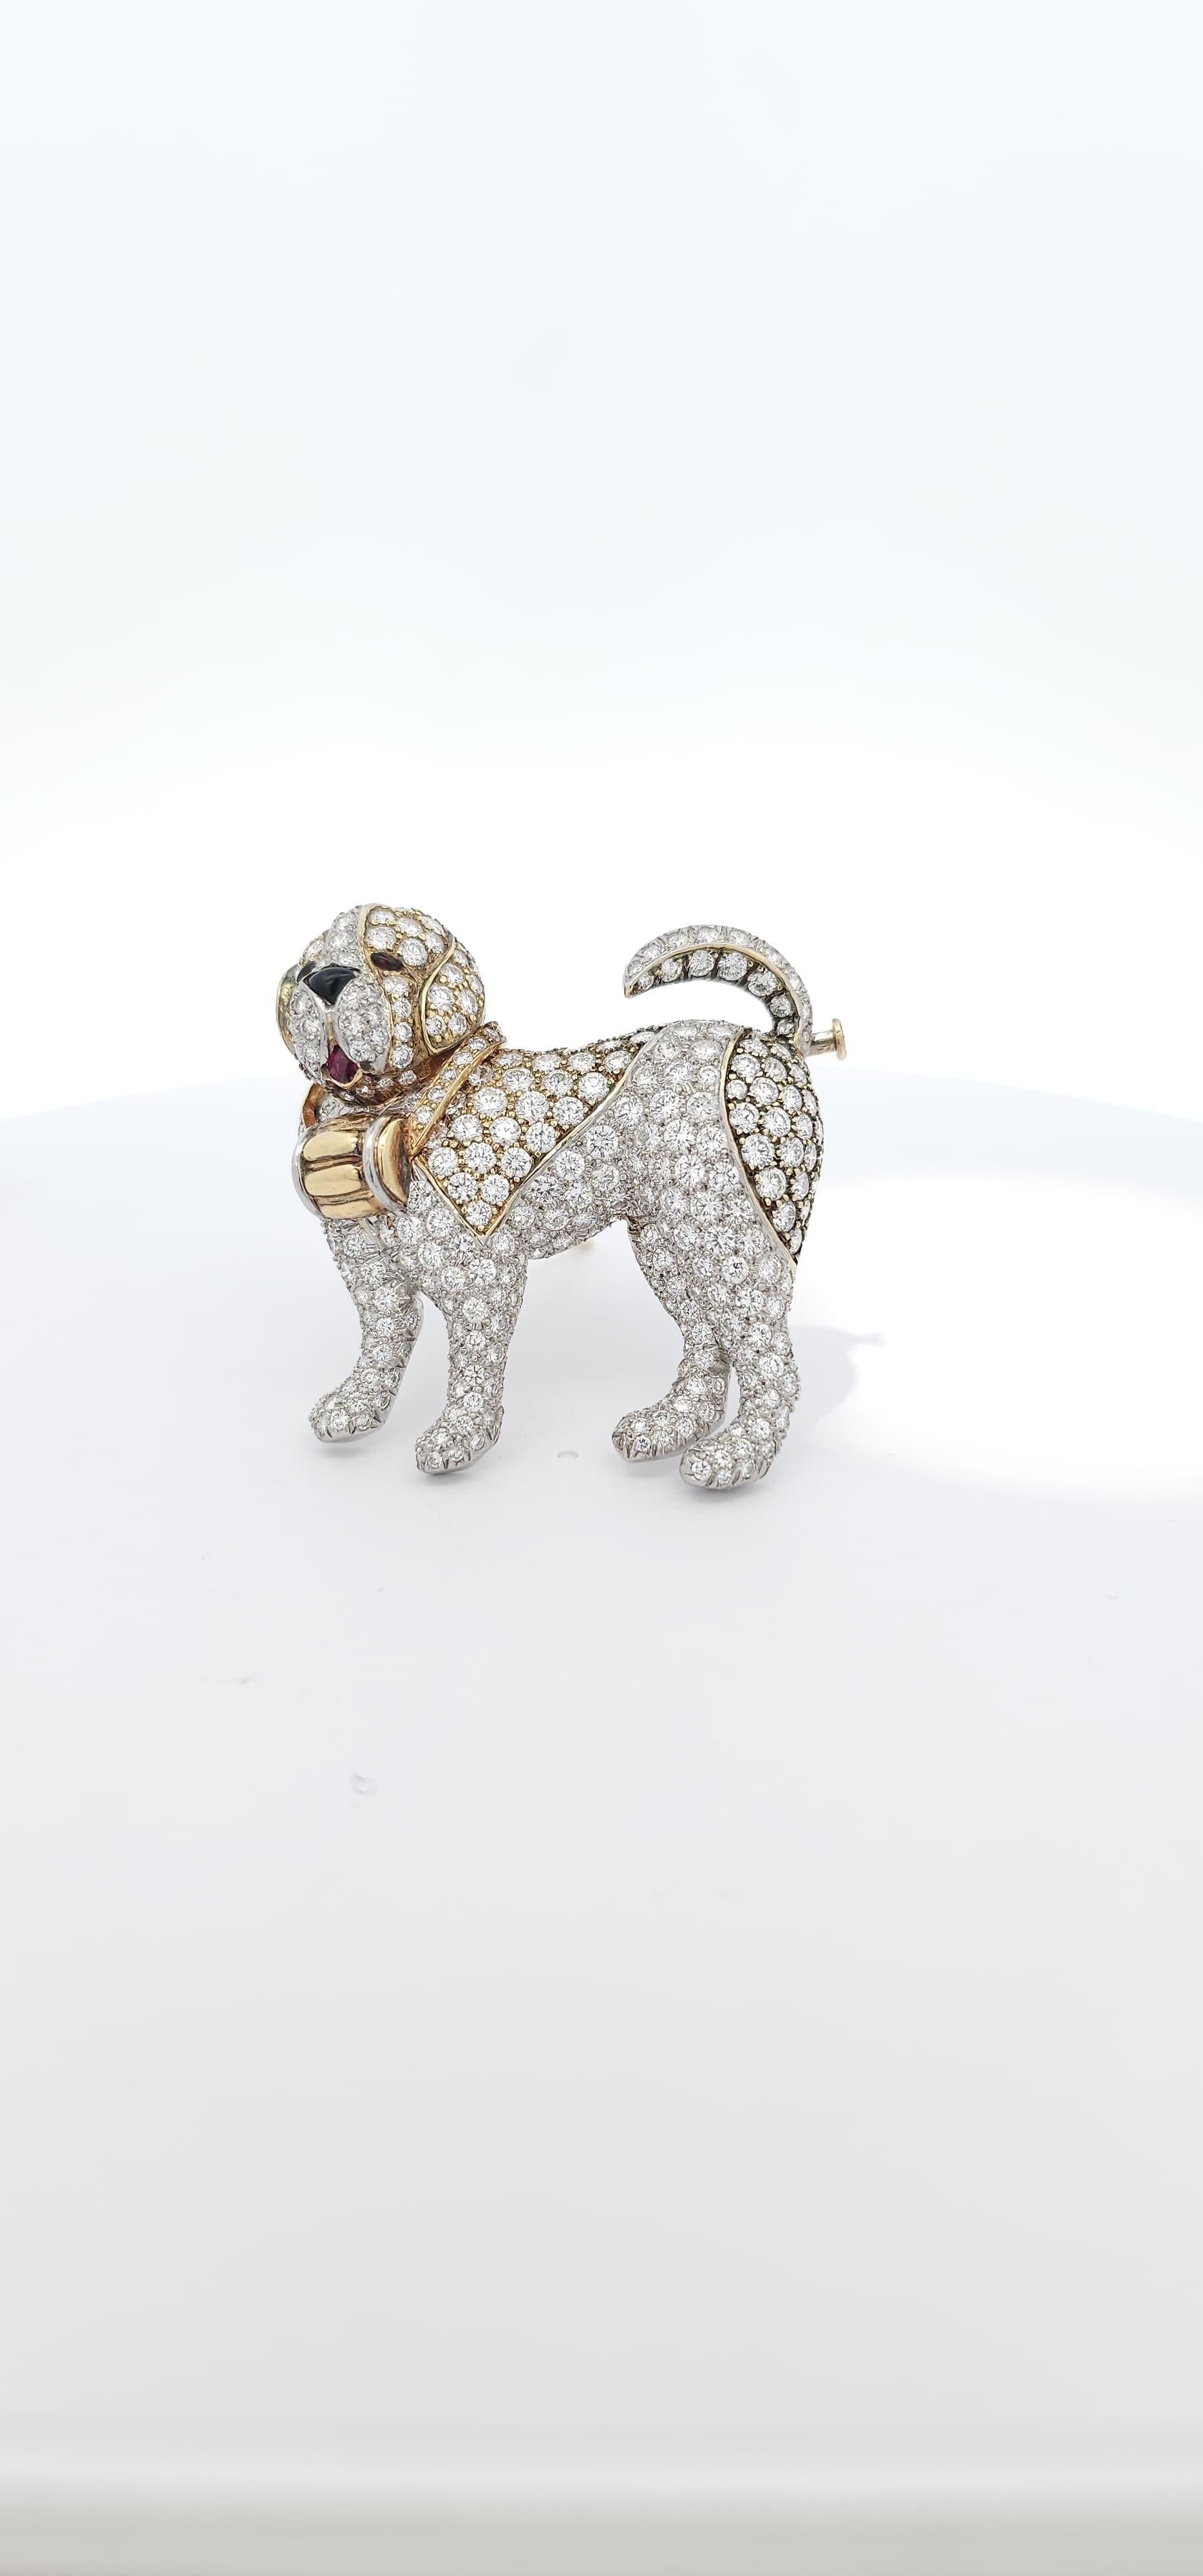 Broche chien en diamants Van Cleef & Arpels. 

Broche en forme de chien saint-bernard, ornée de diamants pavés, d'un rubis en guise de langue et d'un nez et d'yeux en émail noir.

Poids du diamant : environ 8.15 carat

Dimensions : 1.5 pouces de